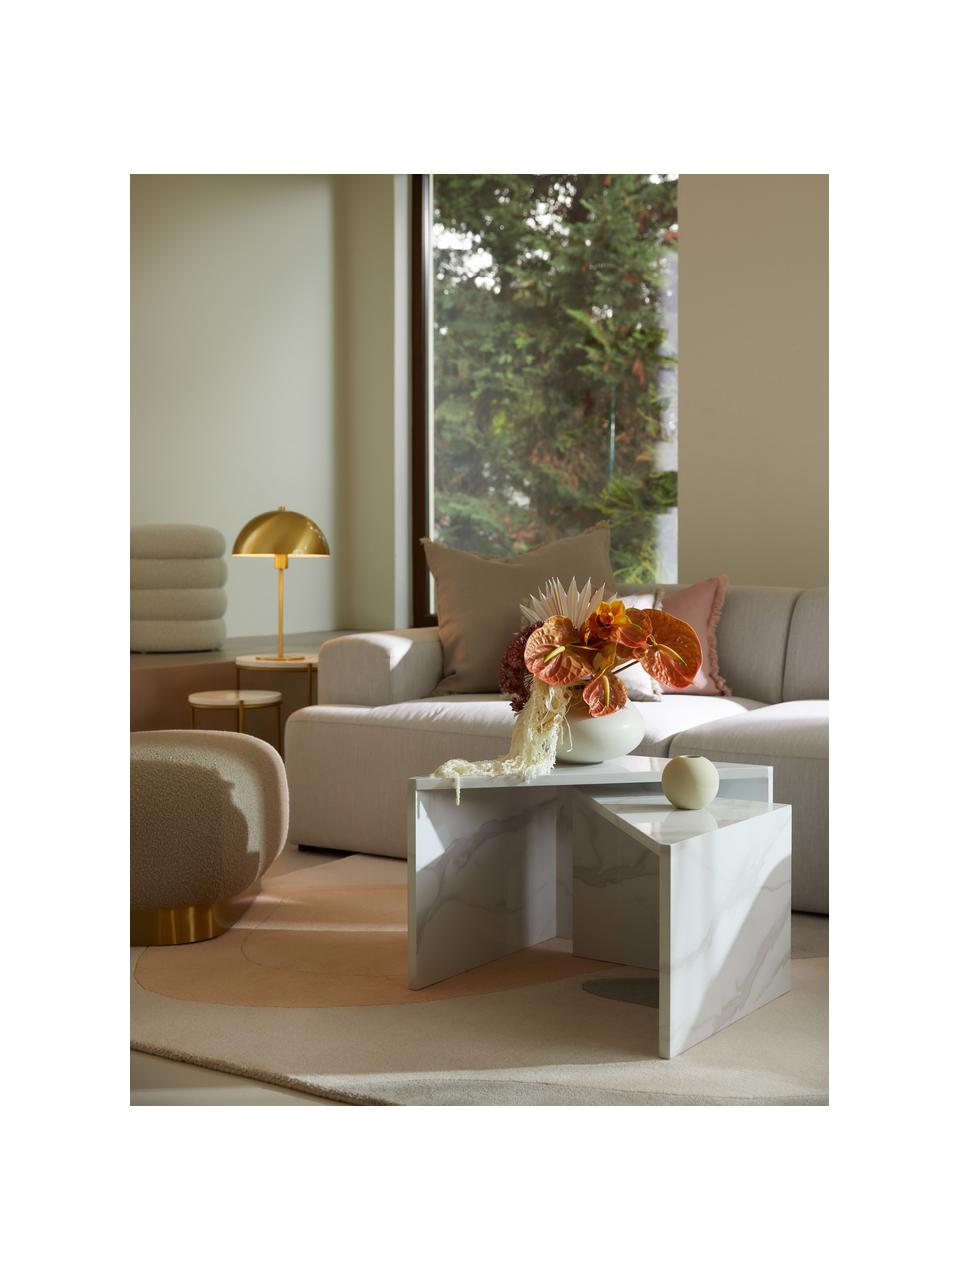 Tables basses aspect marbre Vilma, 2 élém., MDF (panneau en fibres de bois à densité moyenne), avec papier adhésive, Blanc, marbré, Lot de différentes tailles